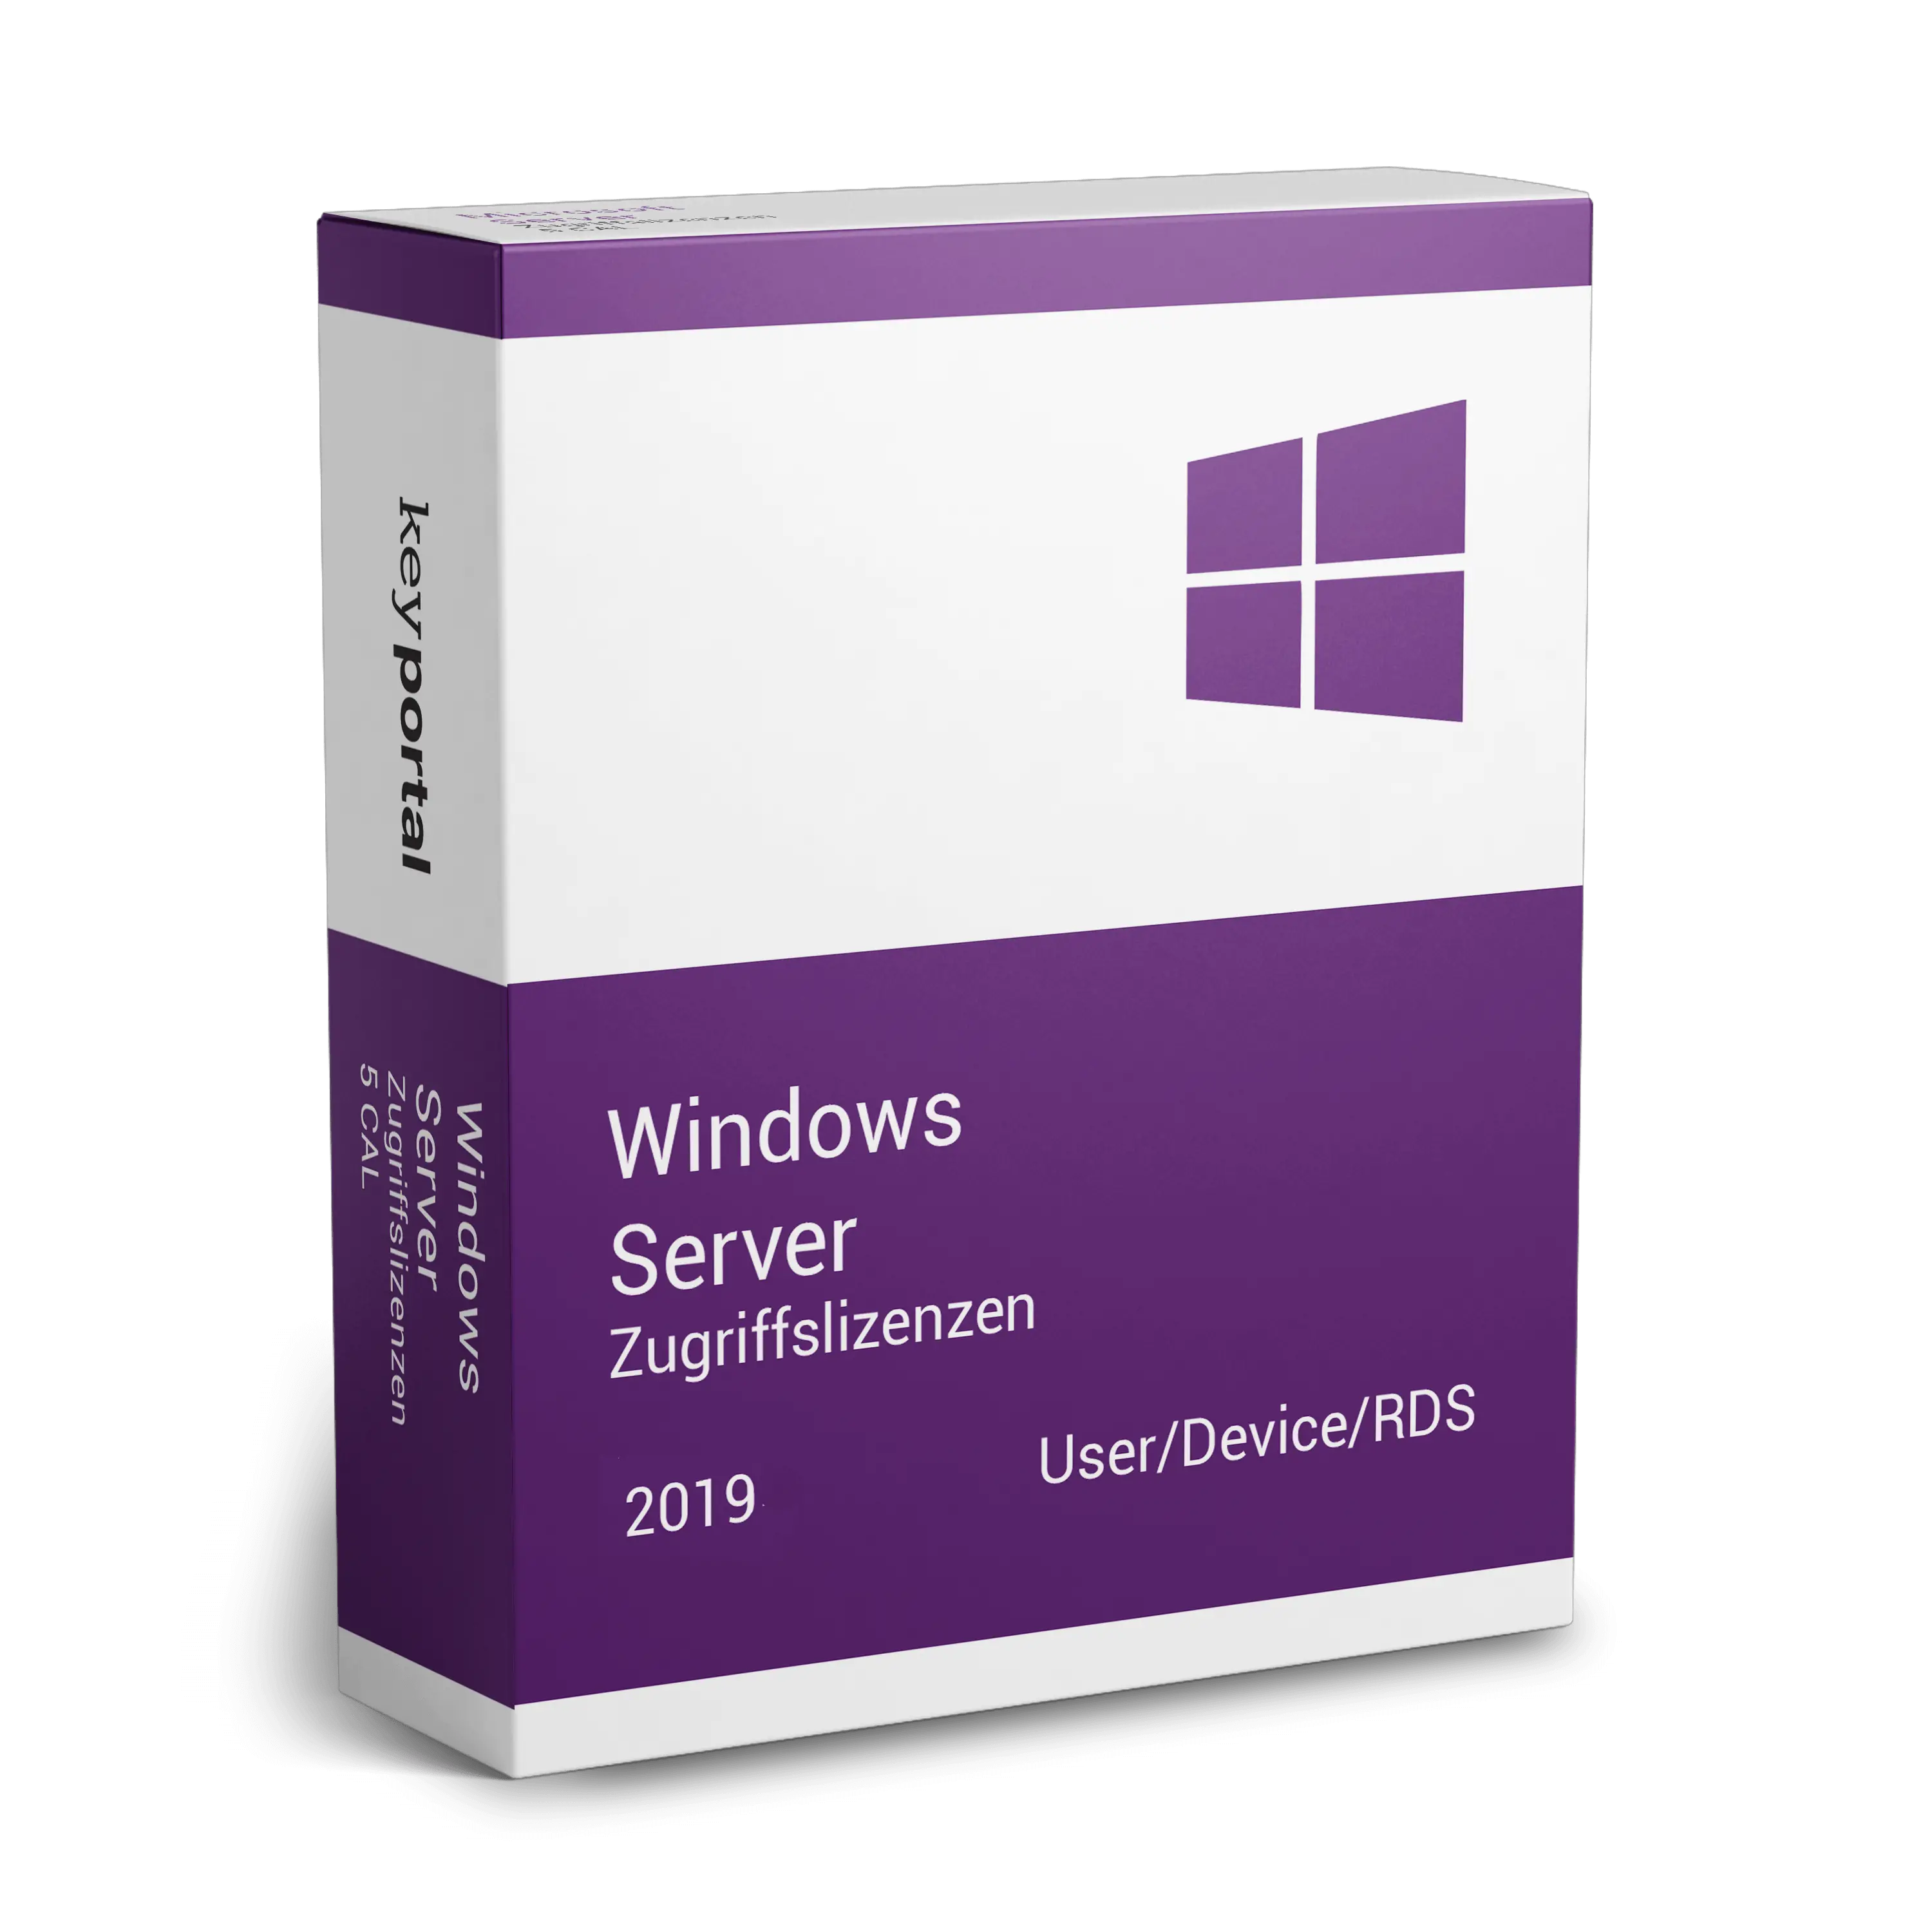 Windows Server 2019 Zugriffslizenzen (CALs)